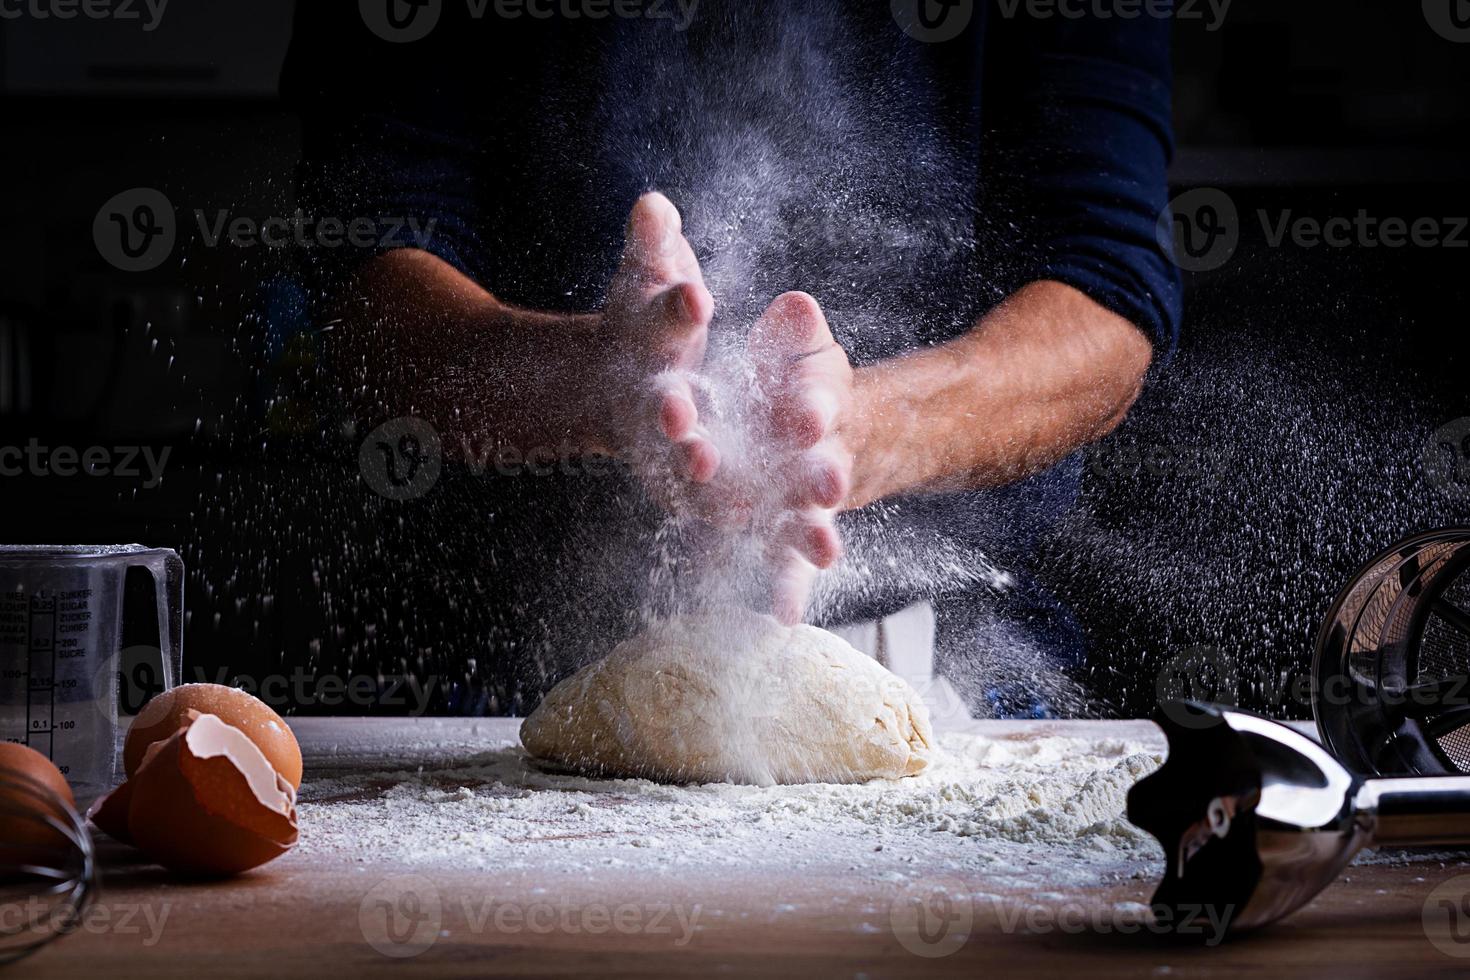 manos masculinas haciendo masa para pizza, albóndigas o pan. concepto de horneado. foto